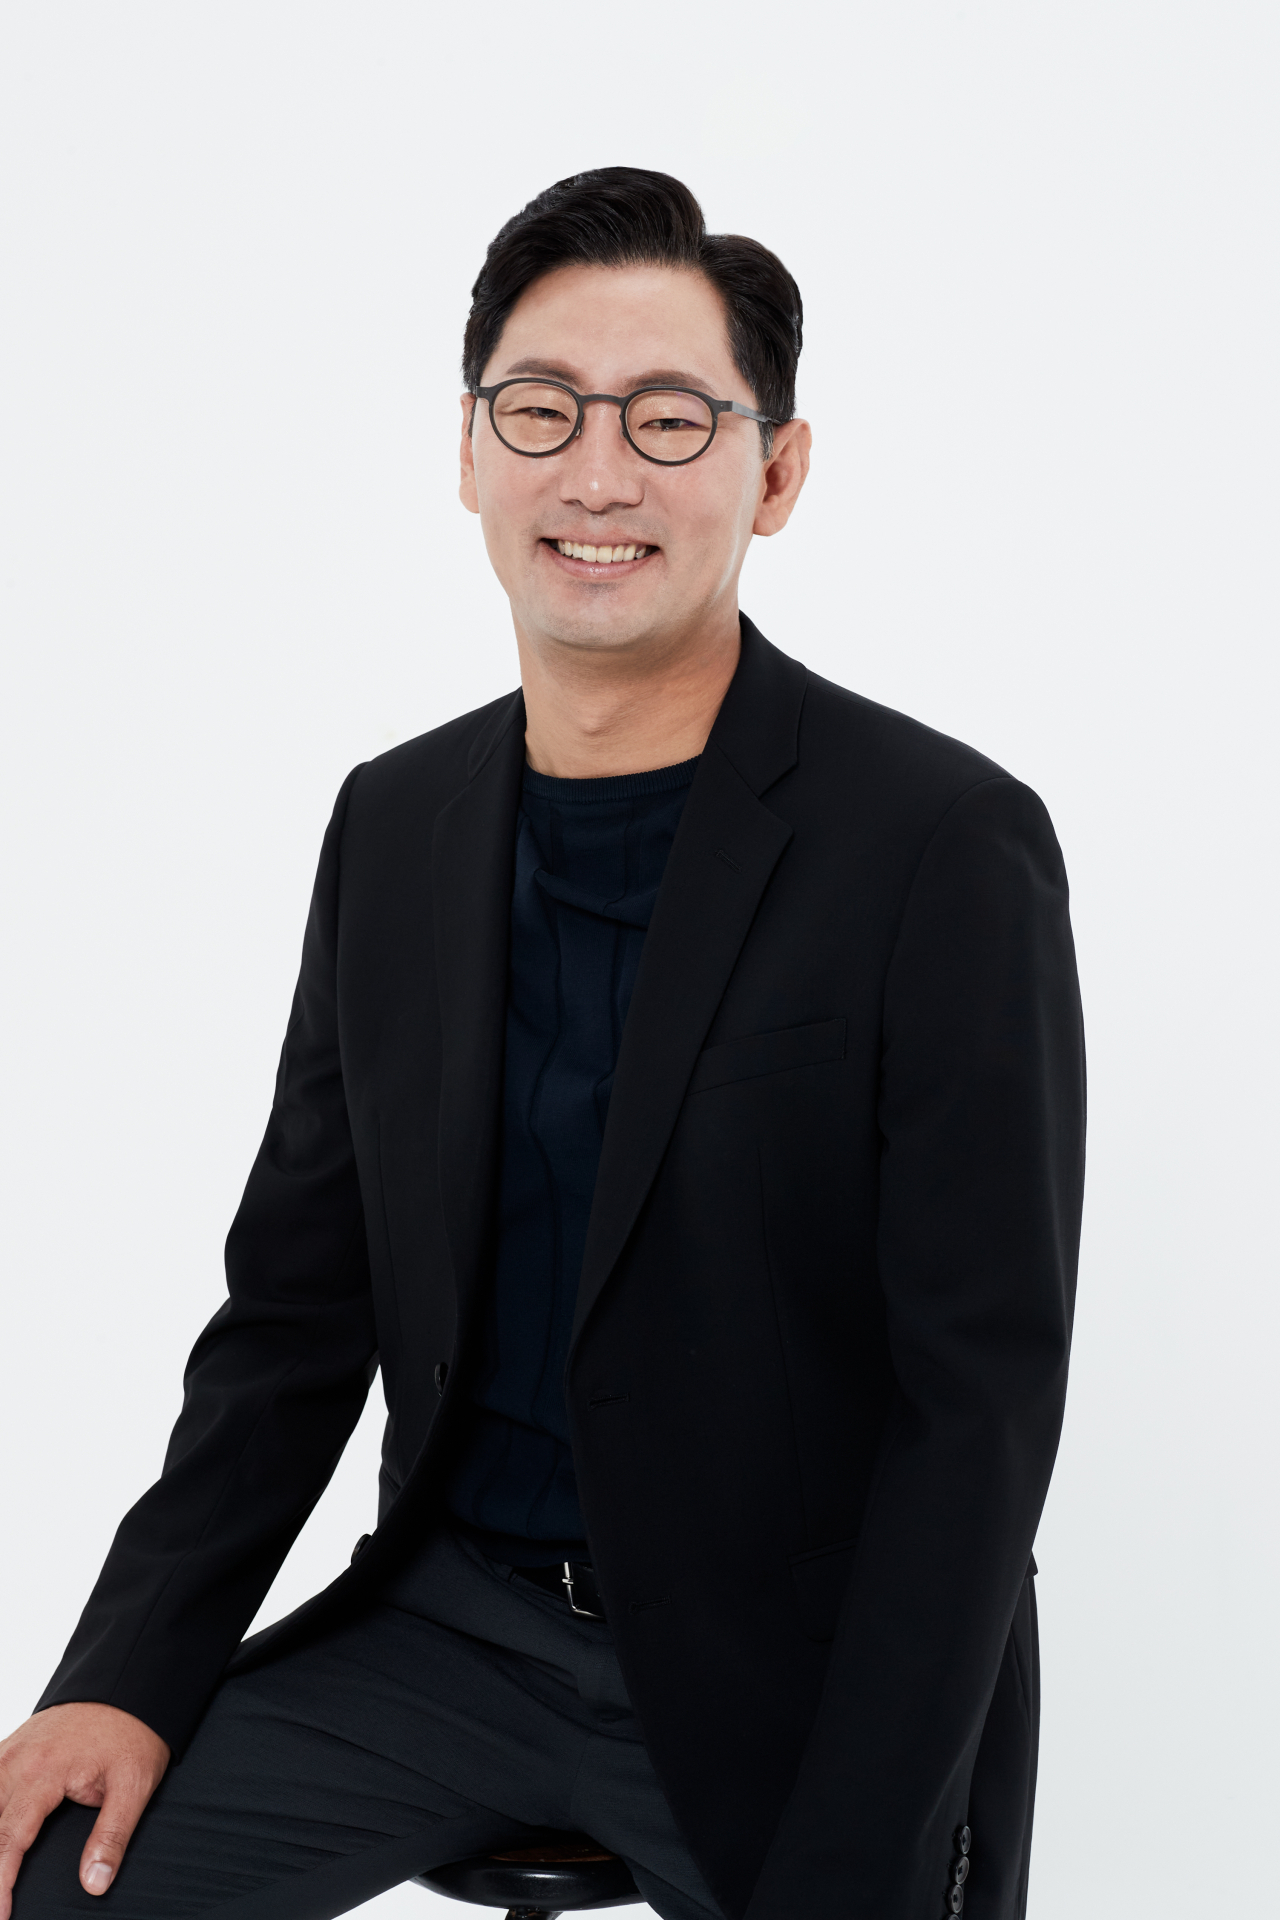 Kakao Pay Vice President Shin Ho-cheol (Kakao Pay)